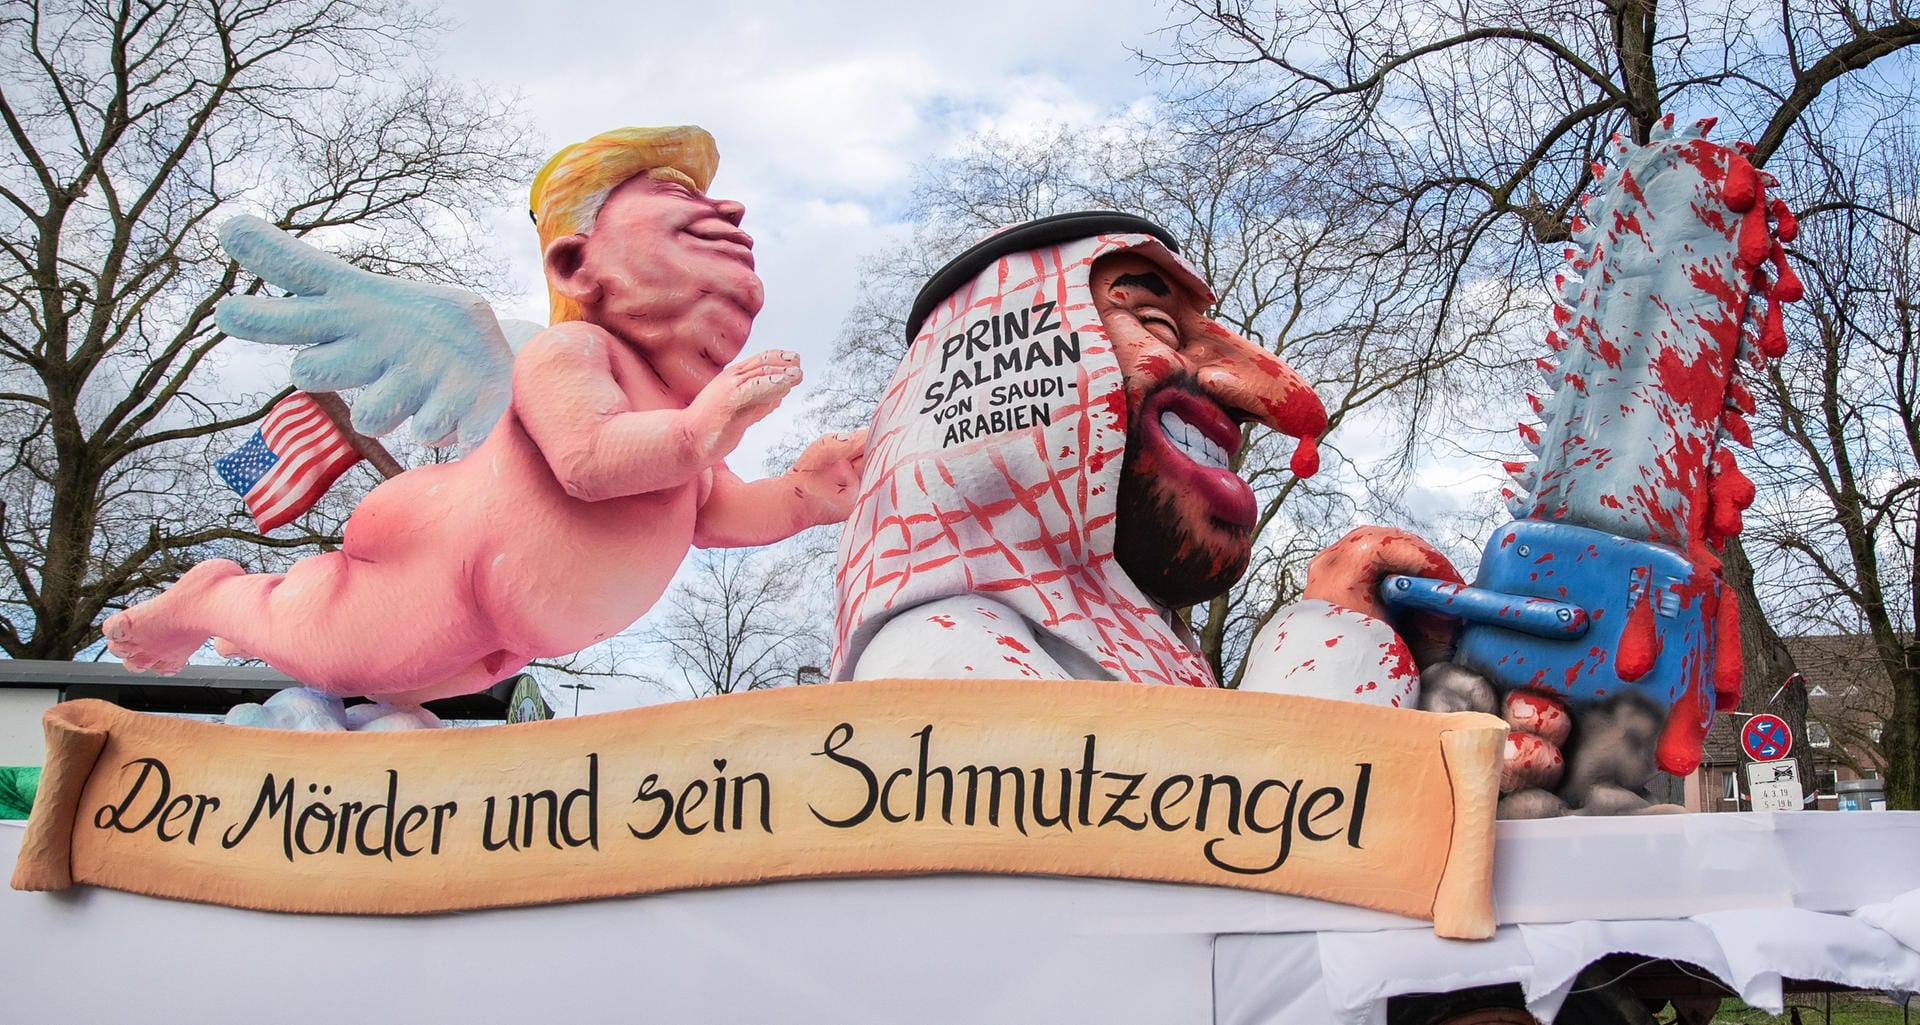 Trump und die Saudis: Der US-Präsident als "Schmutzengel" – der Düsseldorfer Wagen dürfte Donald Trump wohl kaum gefallen.